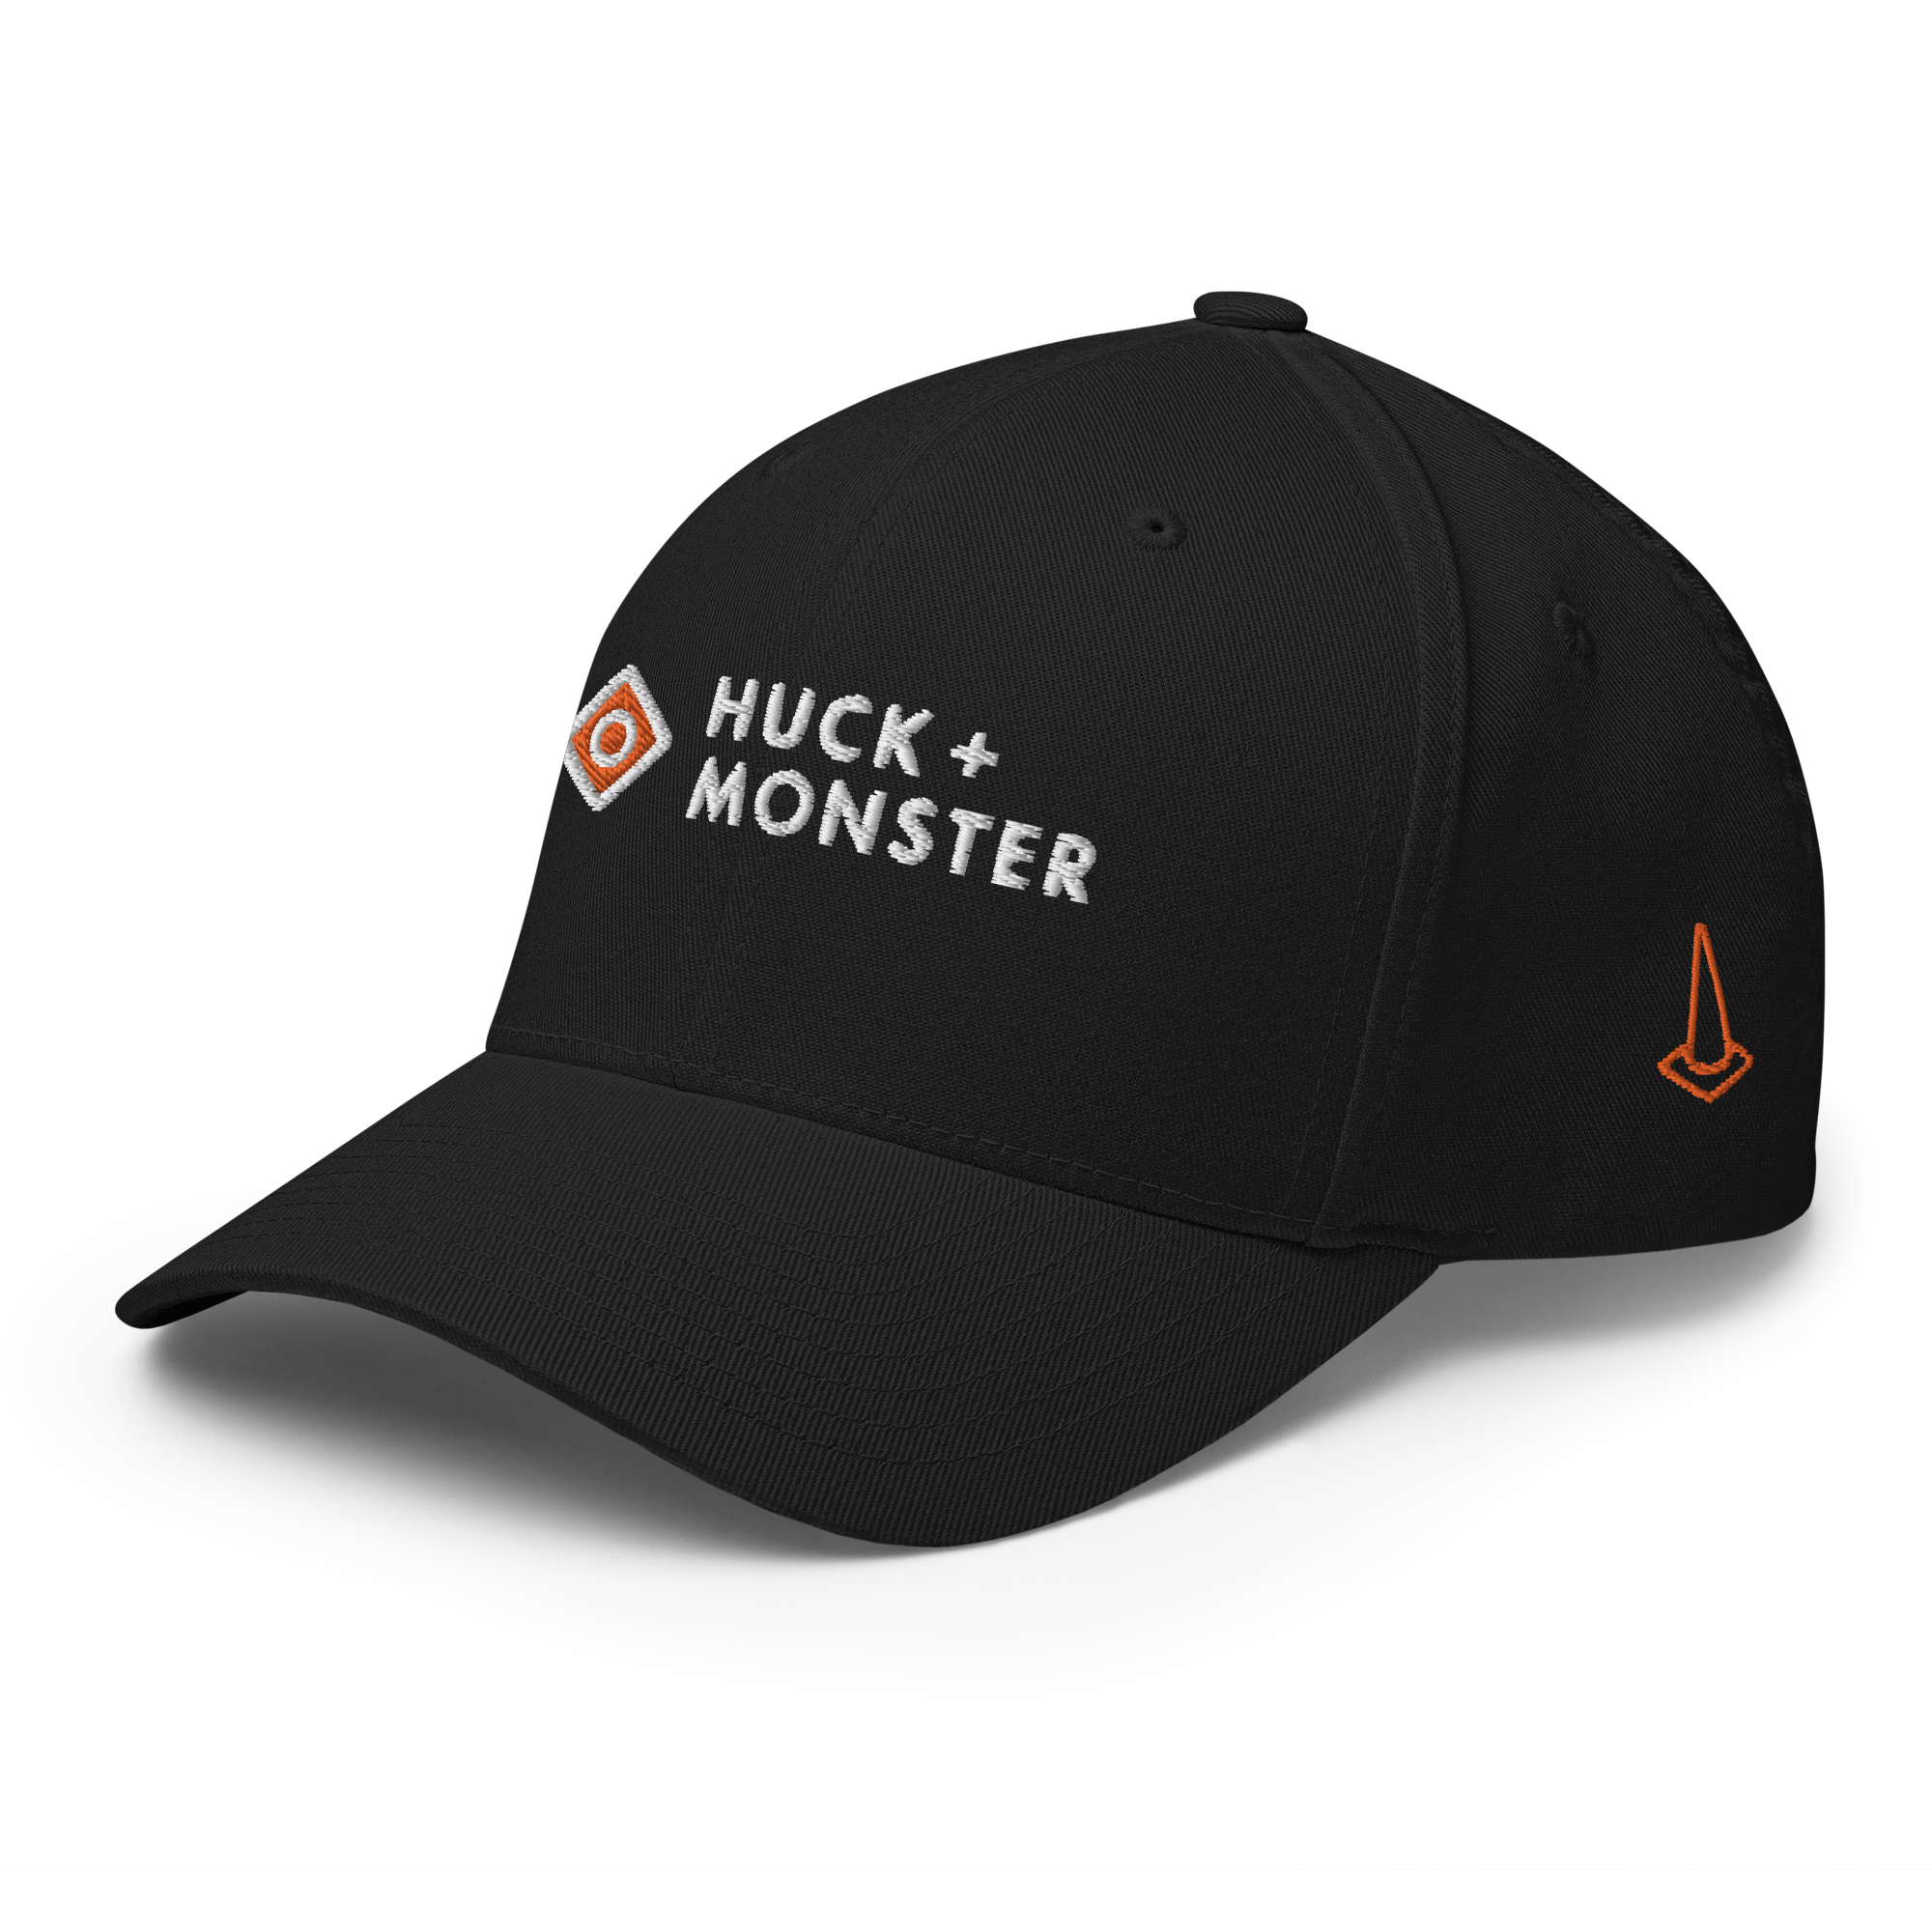 Huck + Monster Player Cap